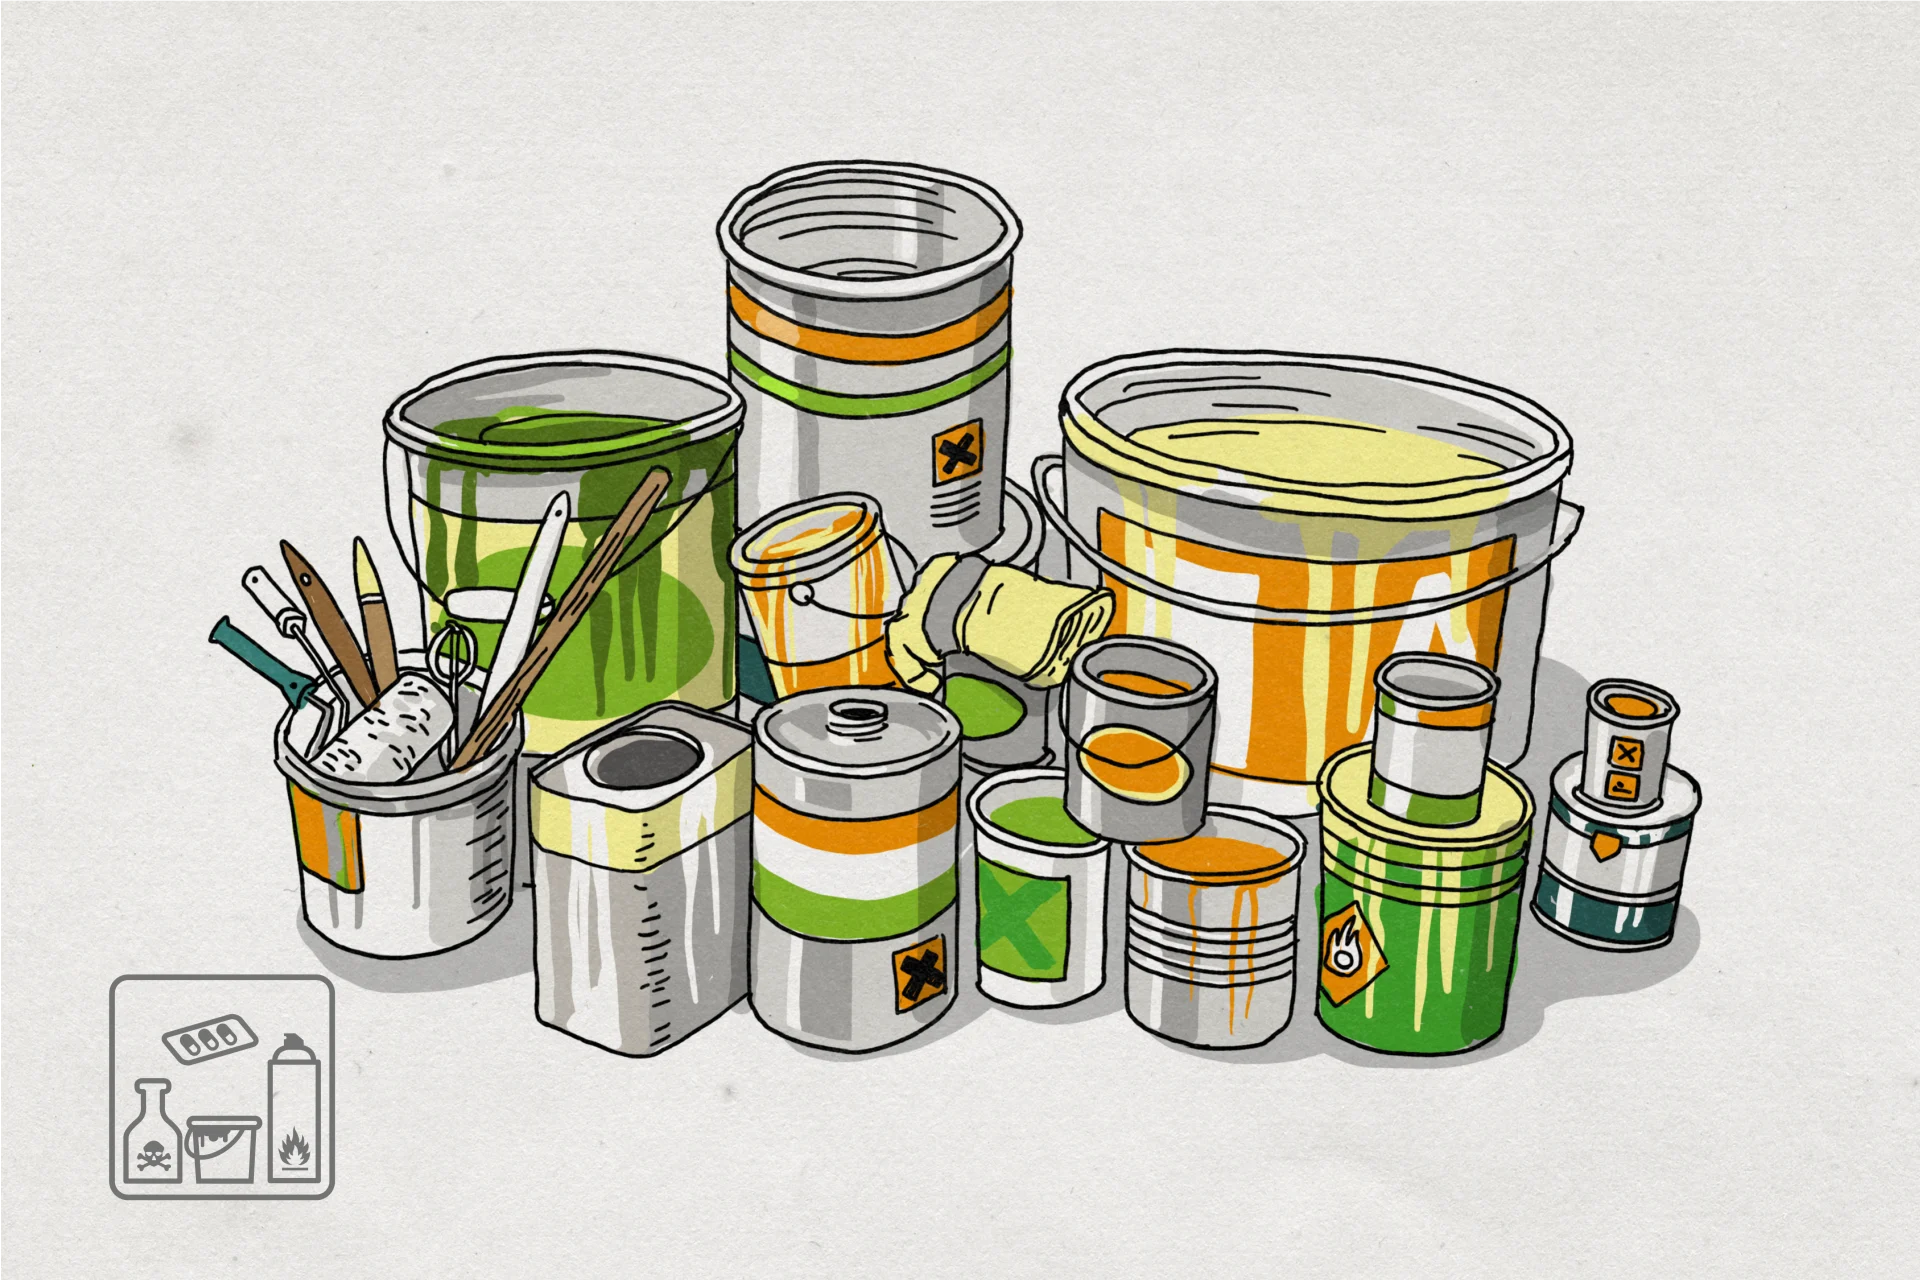 Illustrazione di secchi e barattoli di vernice o pittura e di contenitori di prodotti chimici usati.